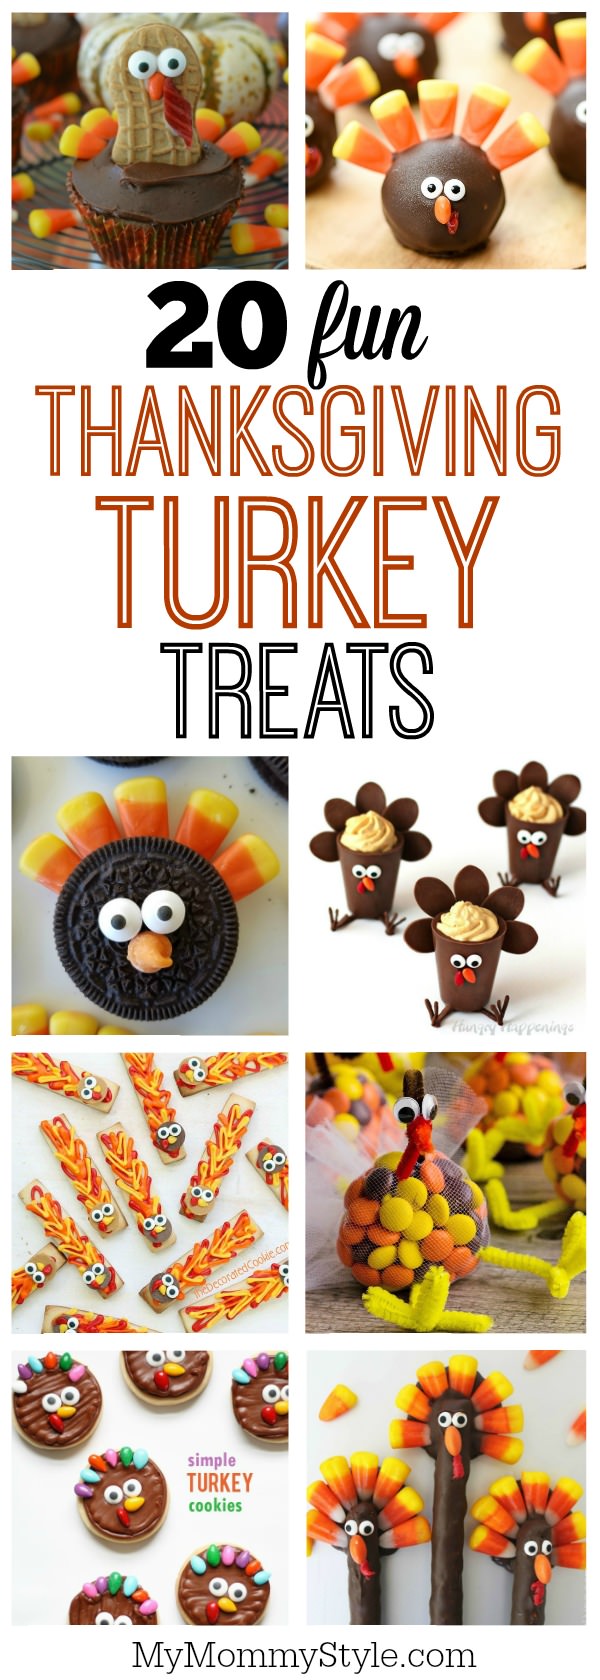 20 Fun Thanksgiving turkey treats - My Mommy Style